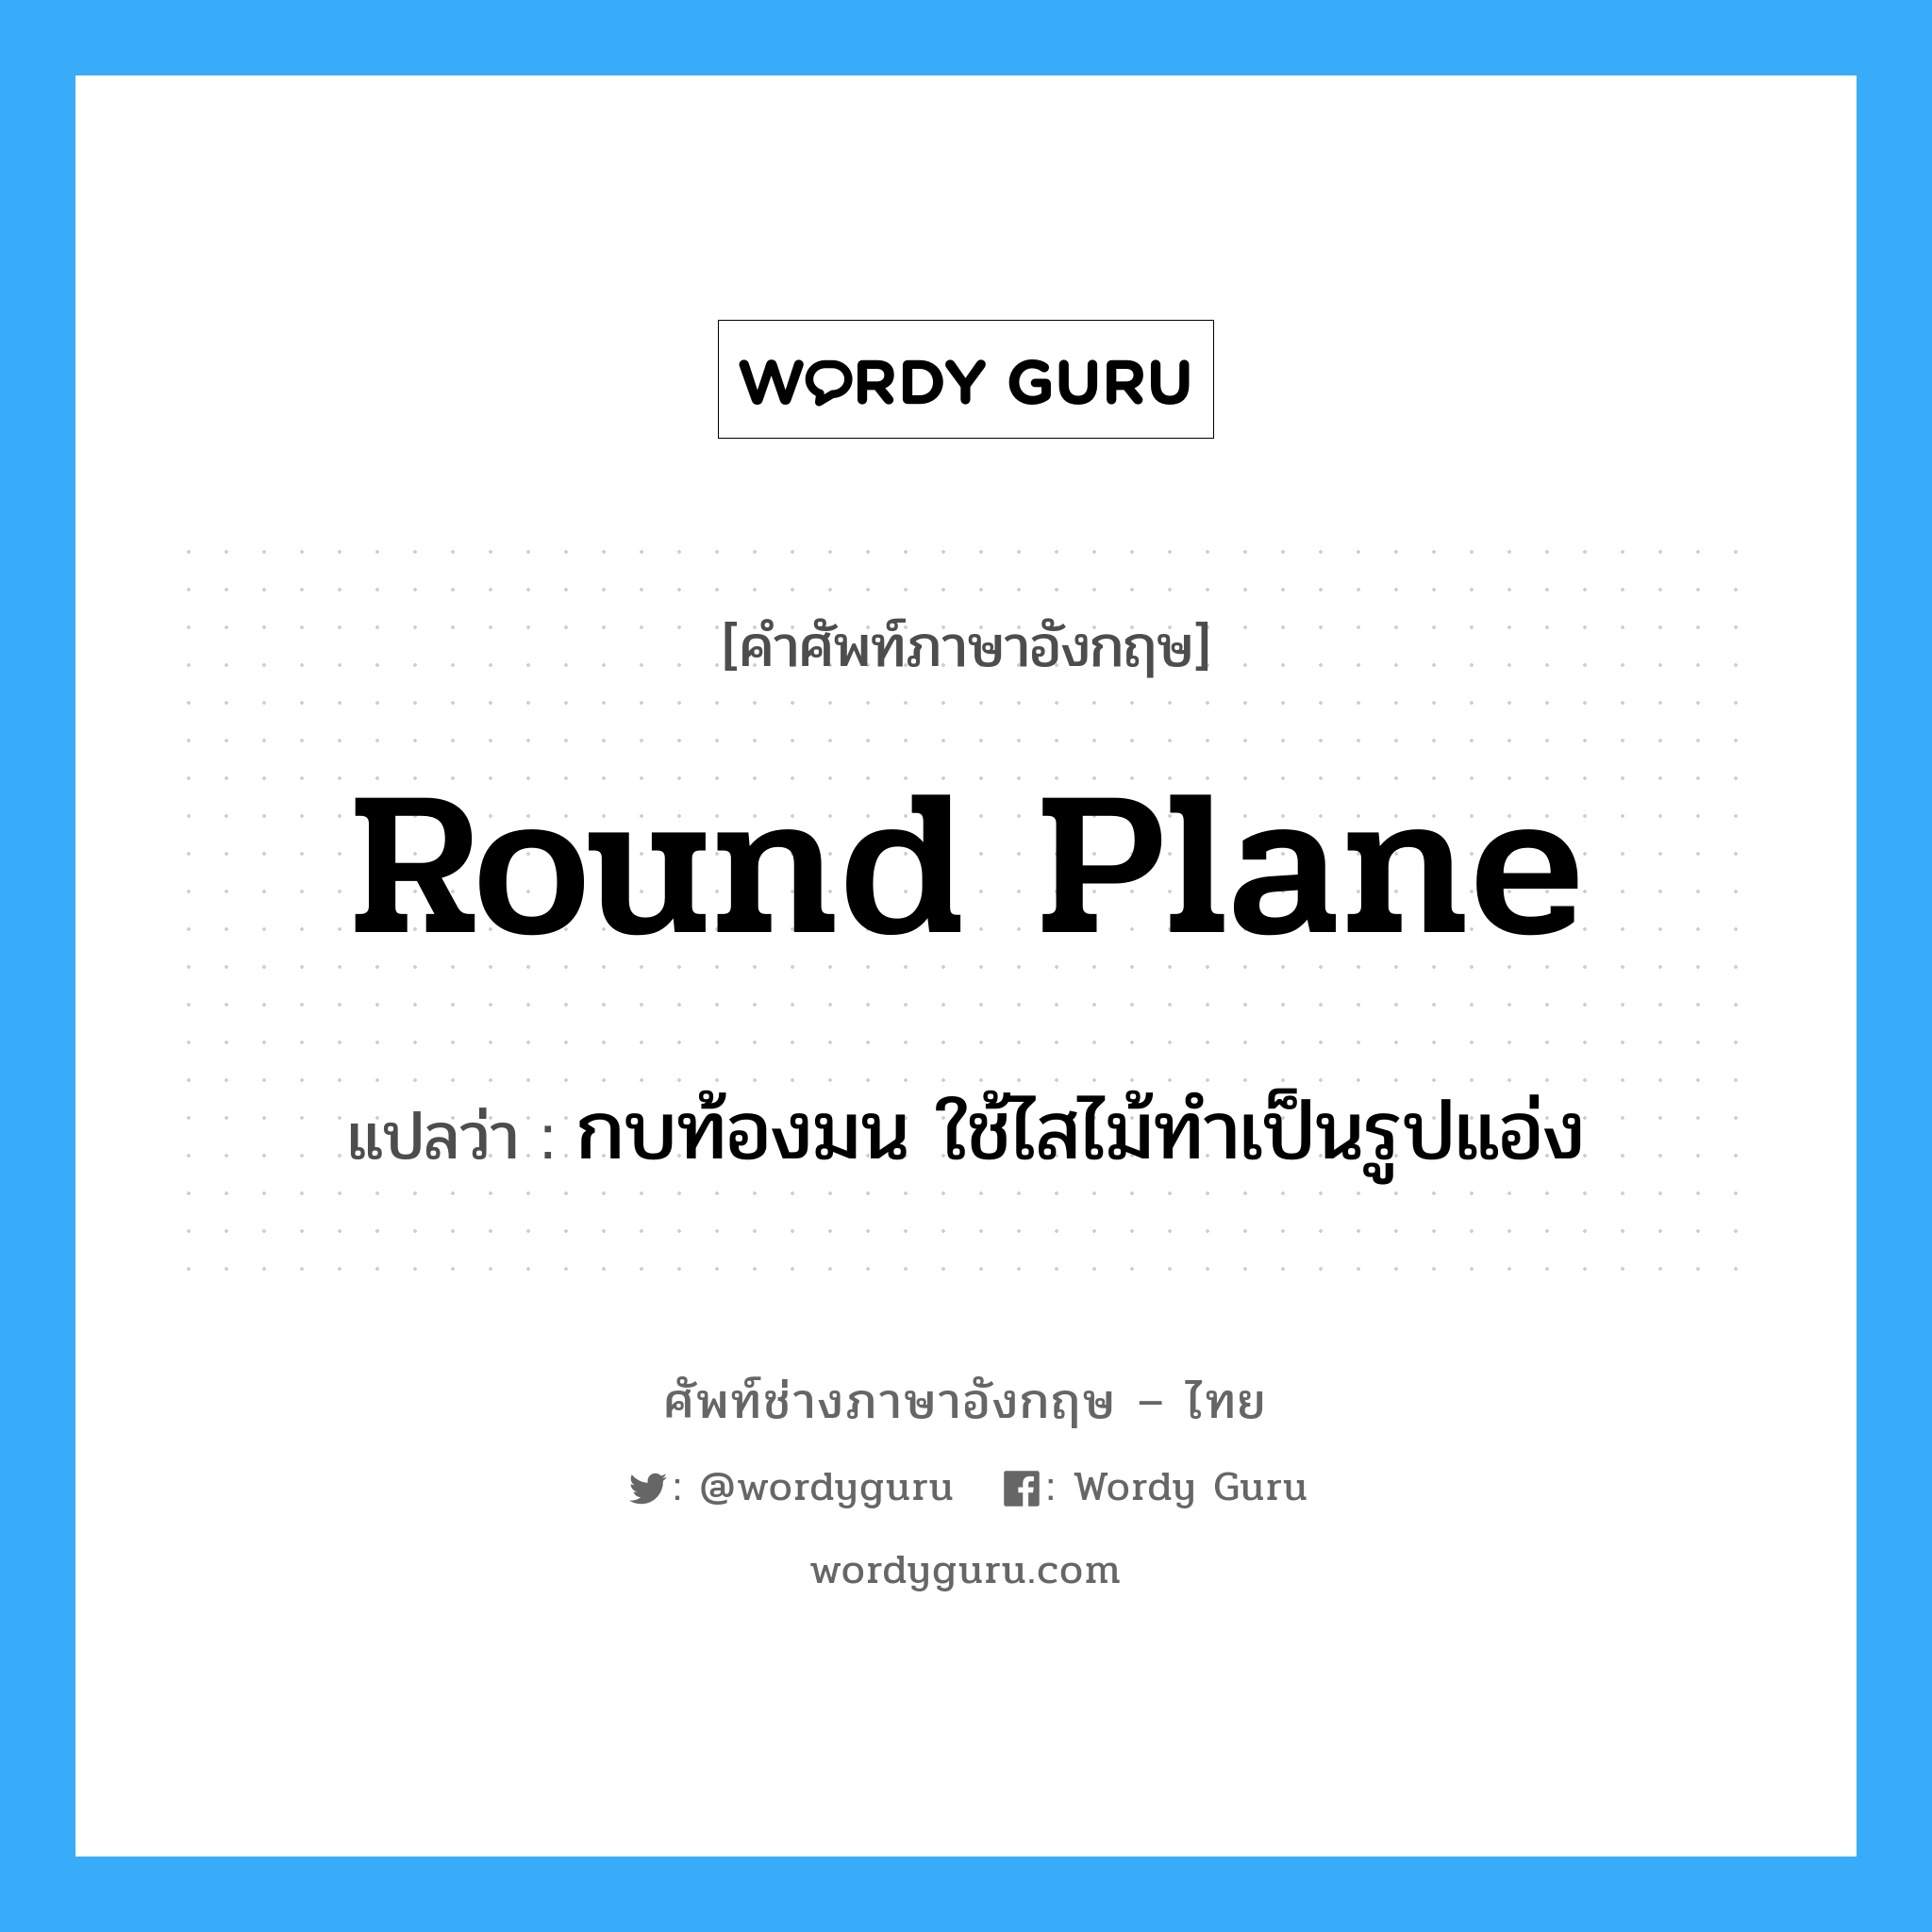 round plane แปลว่า?, คำศัพท์ช่างภาษาอังกฤษ - ไทย round plane คำศัพท์ภาษาอังกฤษ round plane แปลว่า กบท้องมน ใช้ไสไม้ทำเป็นรูปแอ่ง